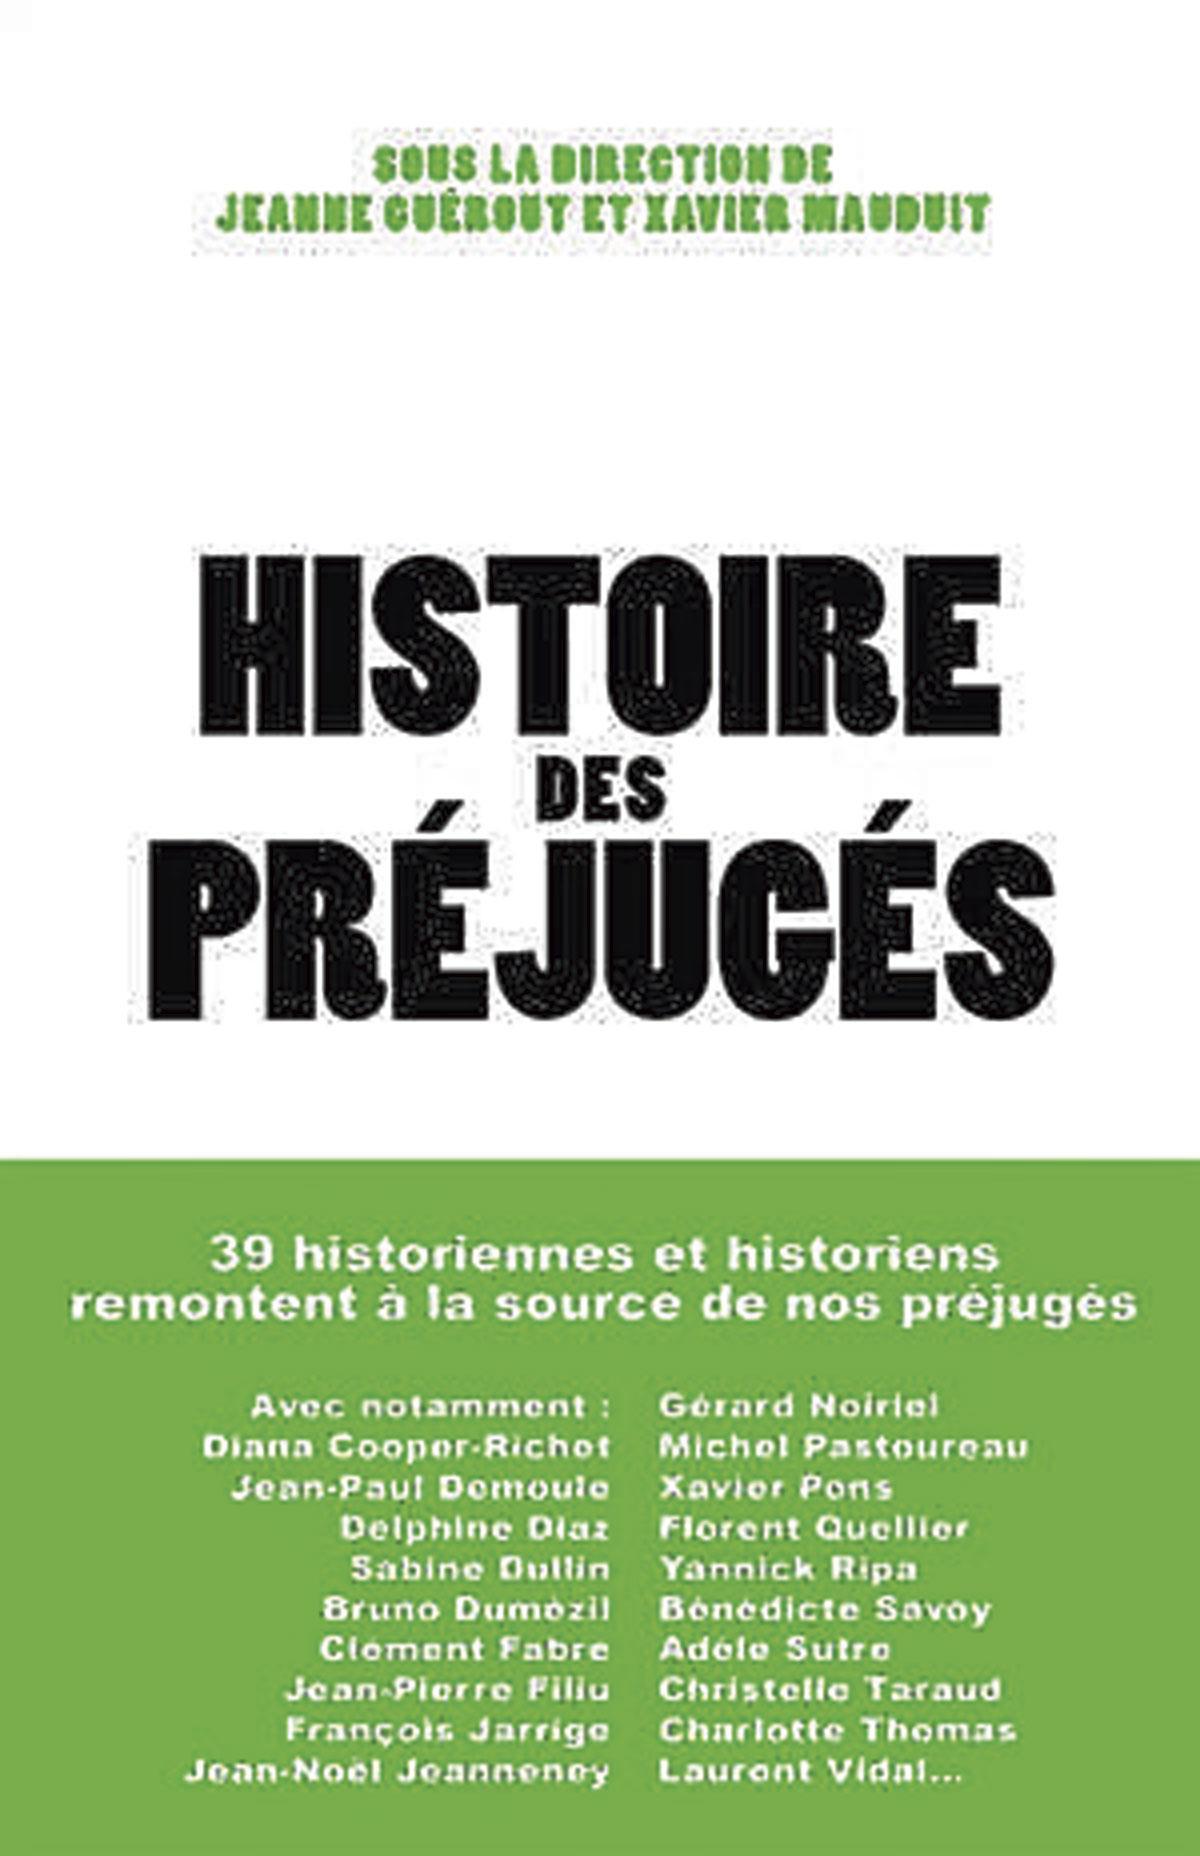 (1) Histoire des préjugés, sous la direction de Jeanne Guérout et Xavier Mauduit, Les Arènes, 472 p.